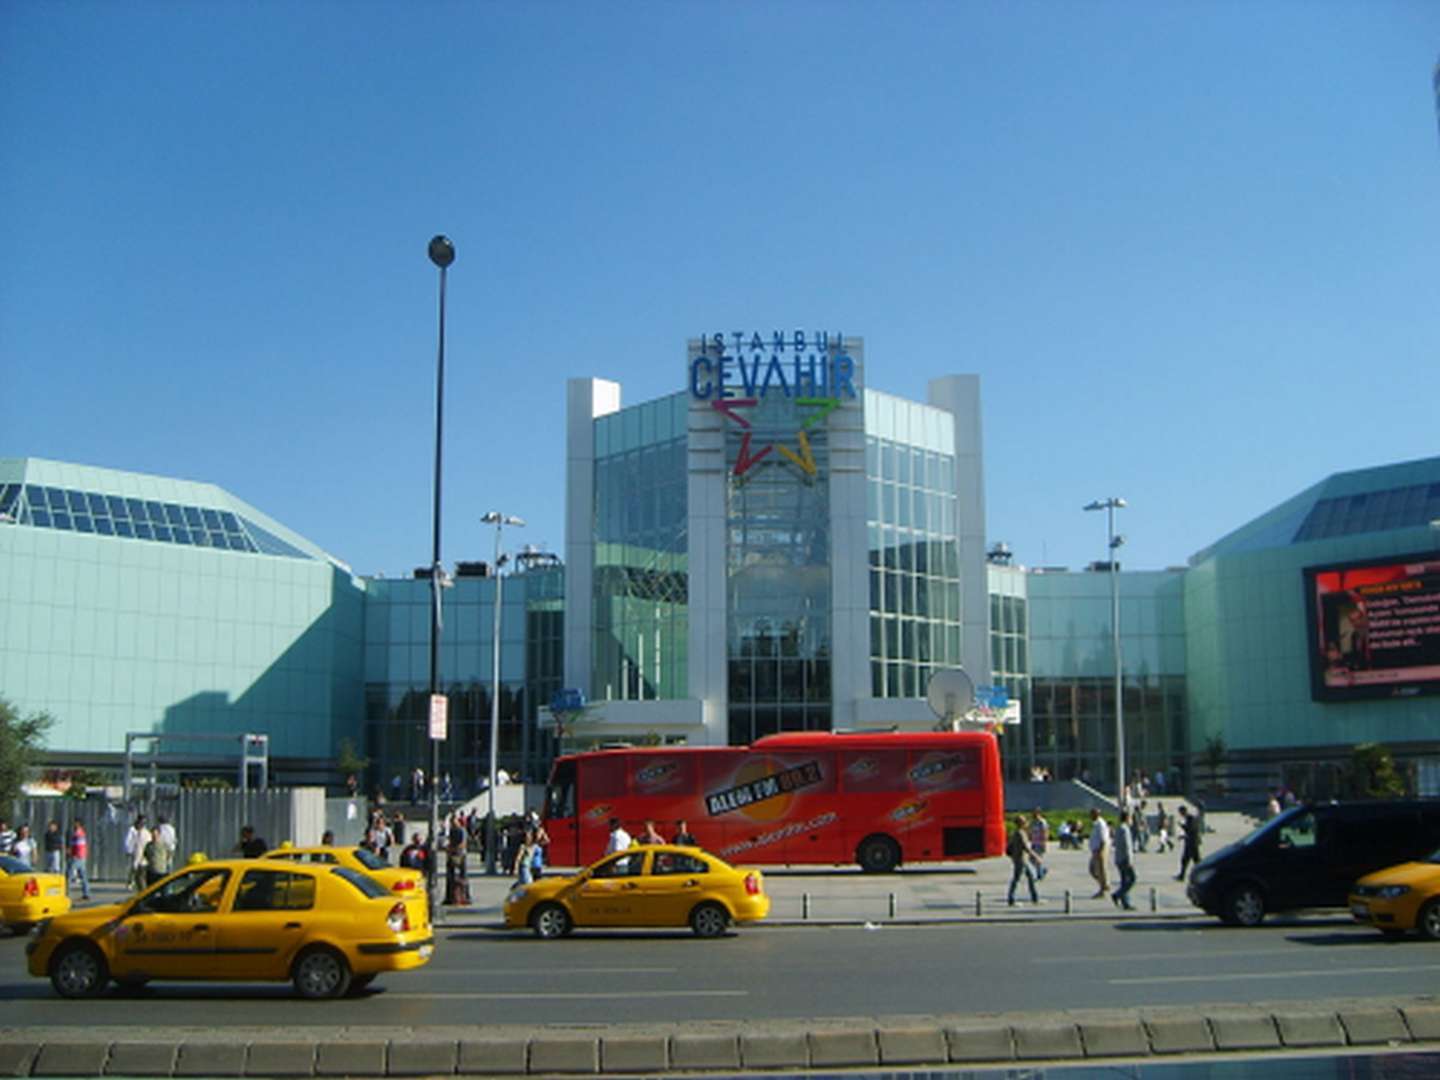 İstanbul Cevahir Alışveriş ve Eğlence Merkezi